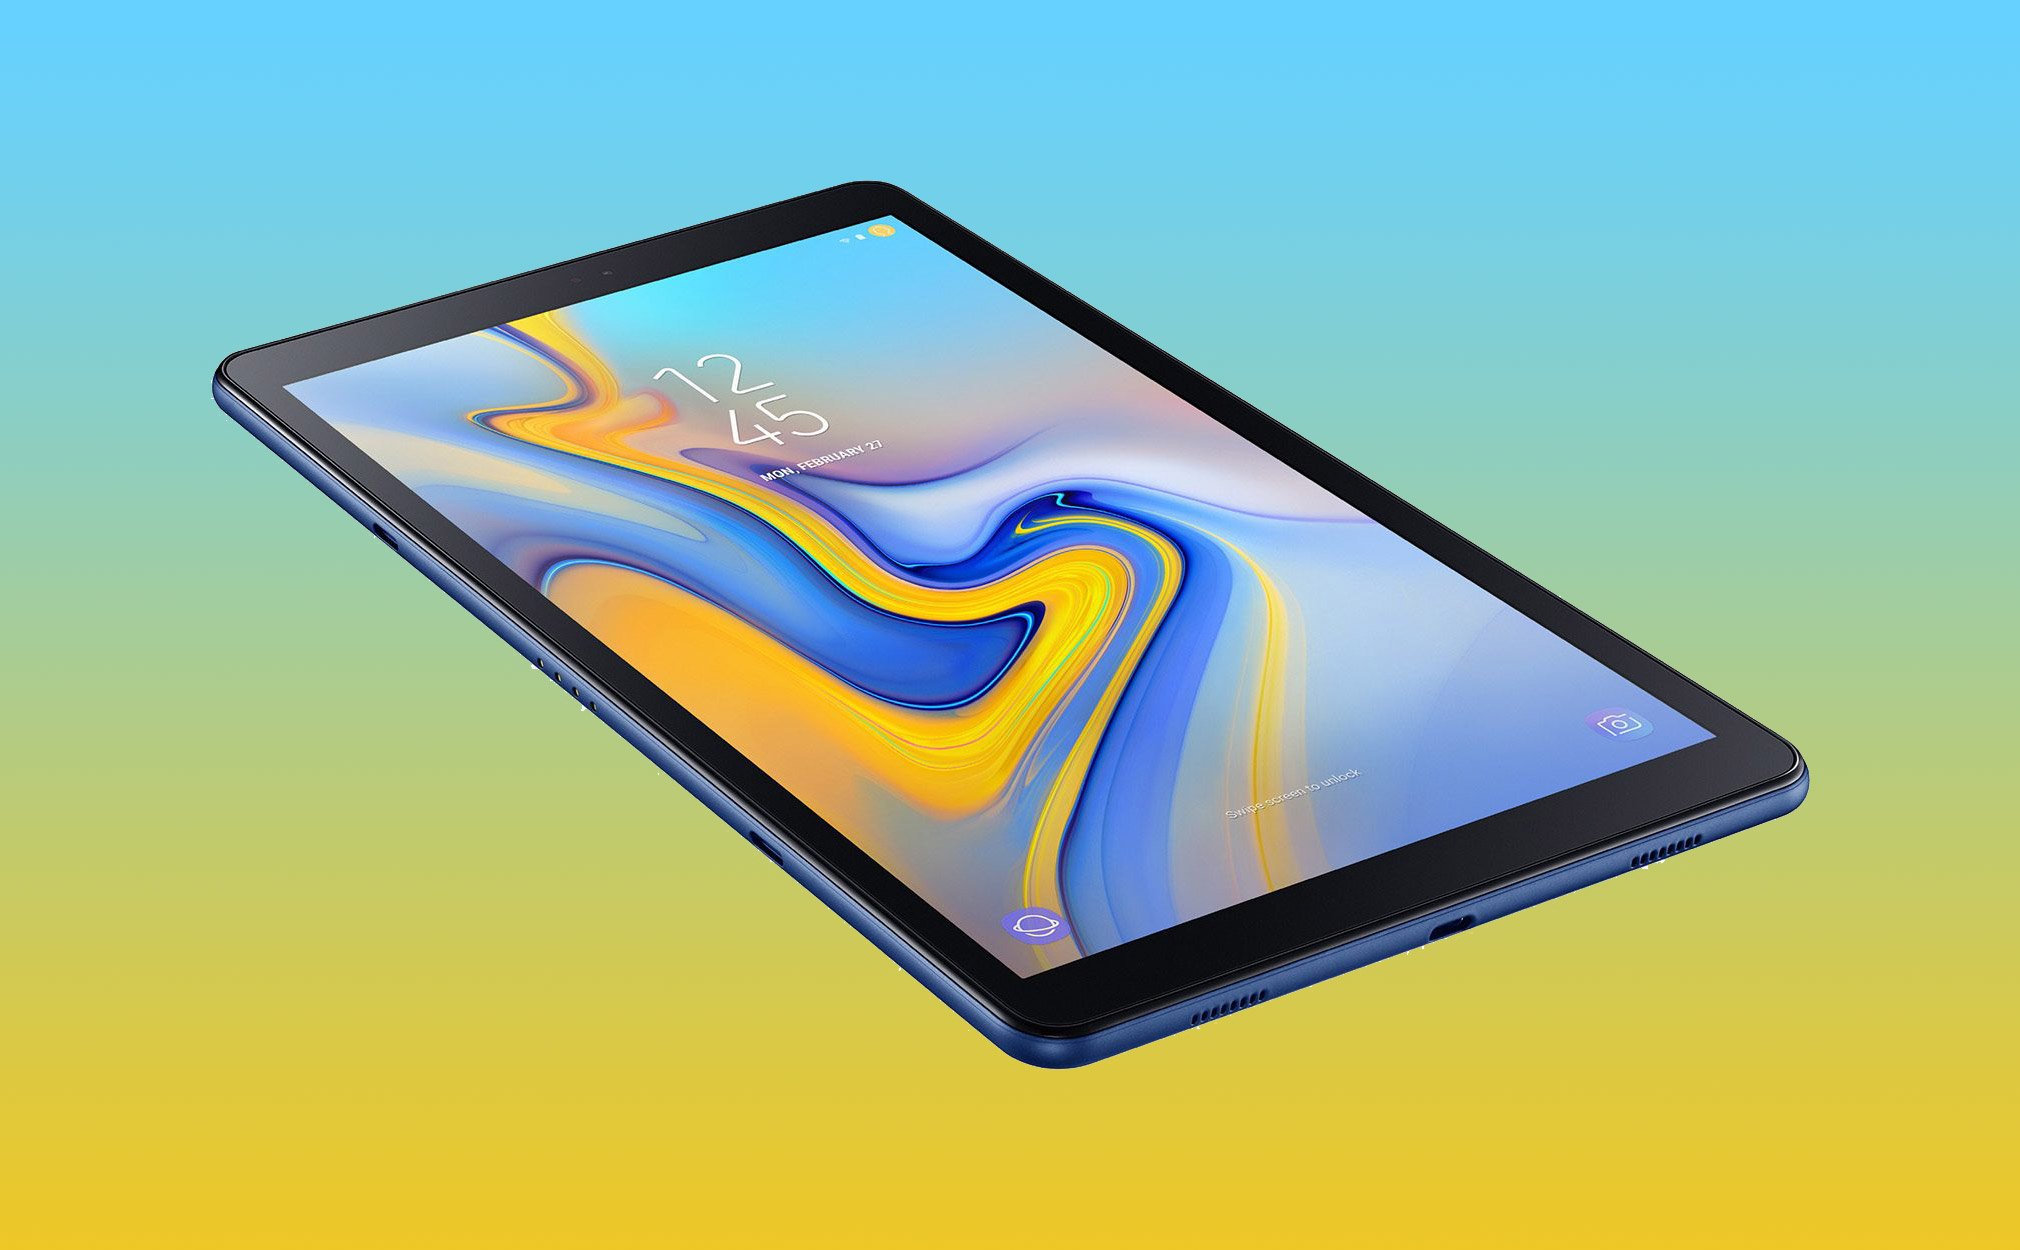 Galaxy Tab A 10.5: bản rẻ hơn của Tab S4, Snapdragon 450, pin vẫn 7300mAh